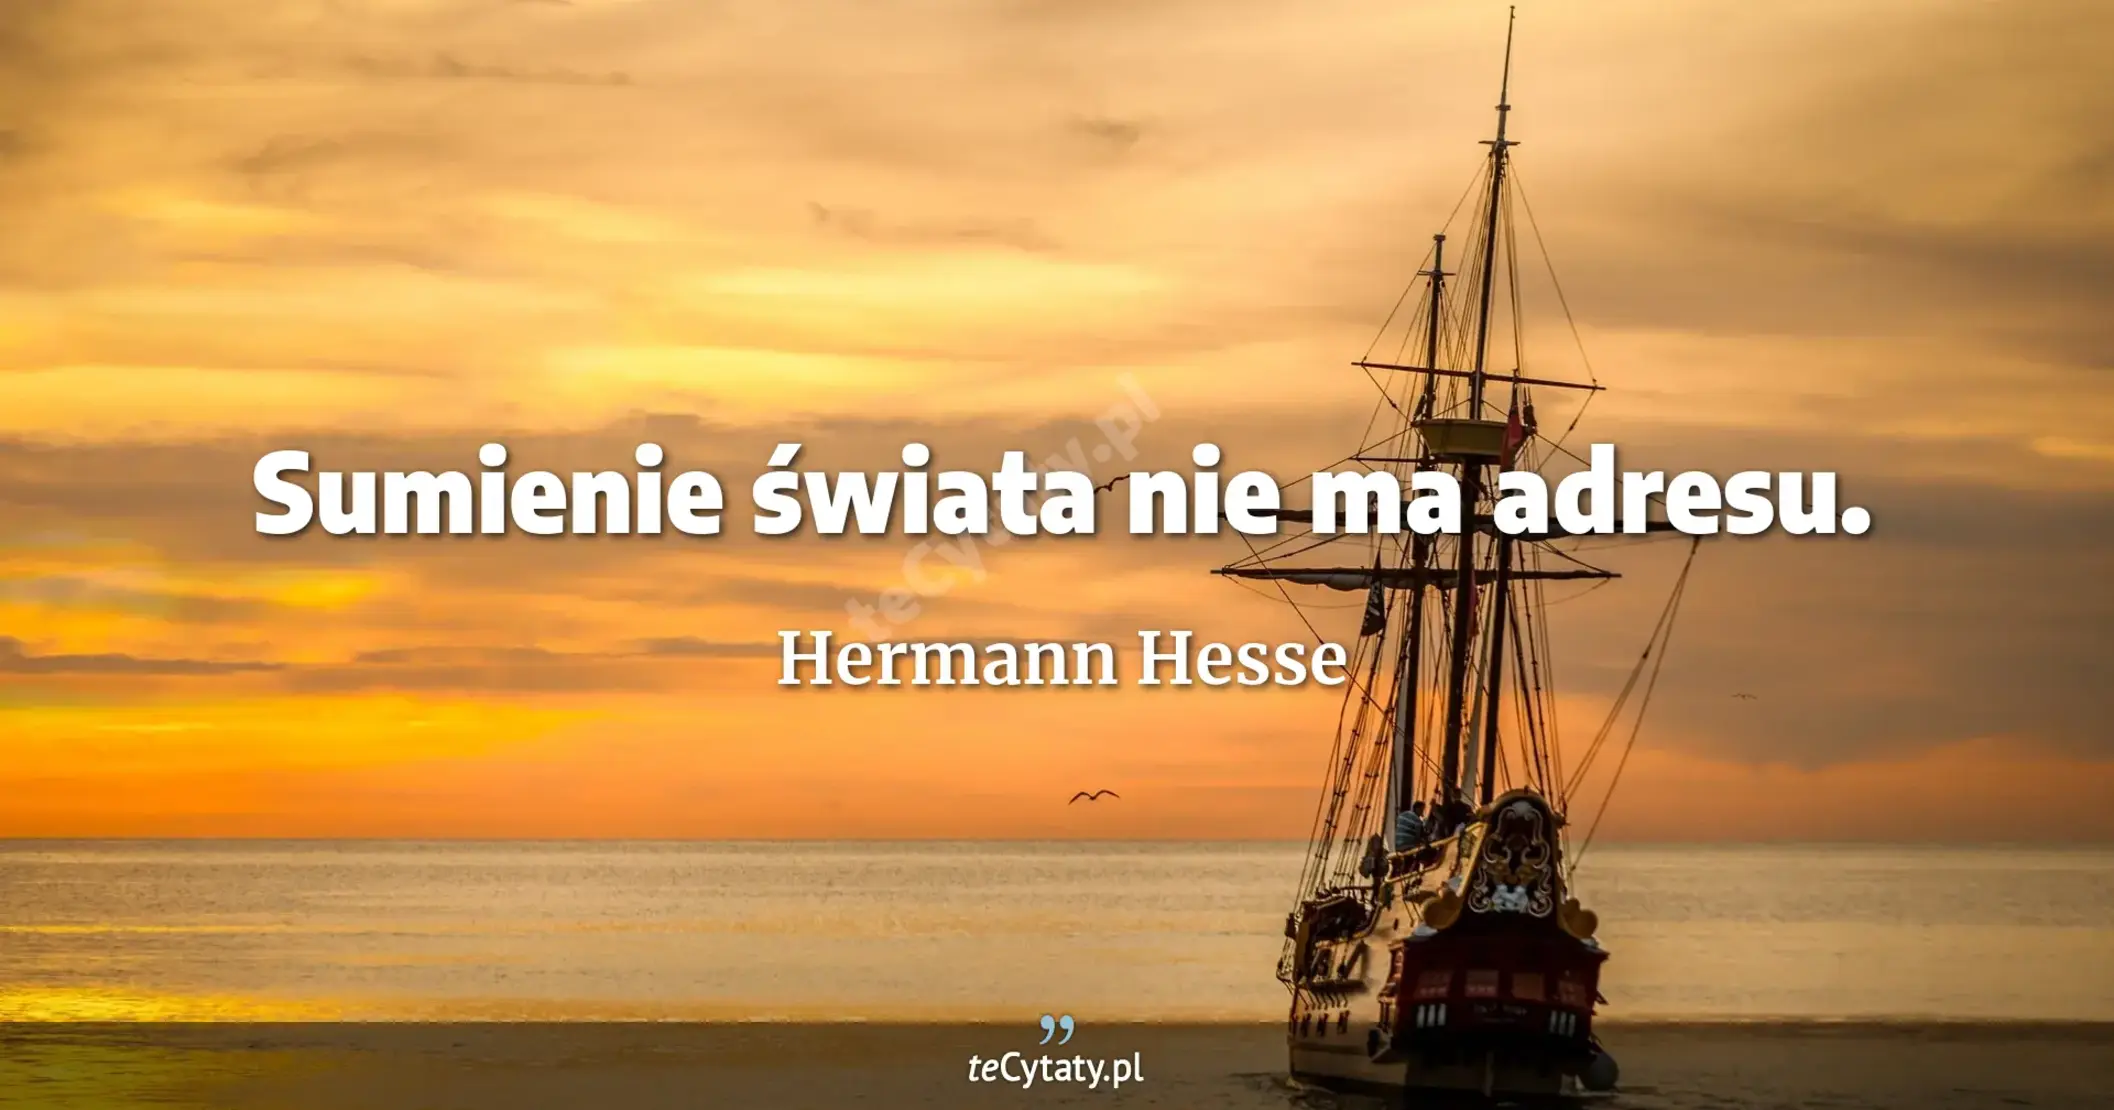 Sumienie świata nie ma adresu. - Hermann Hesse